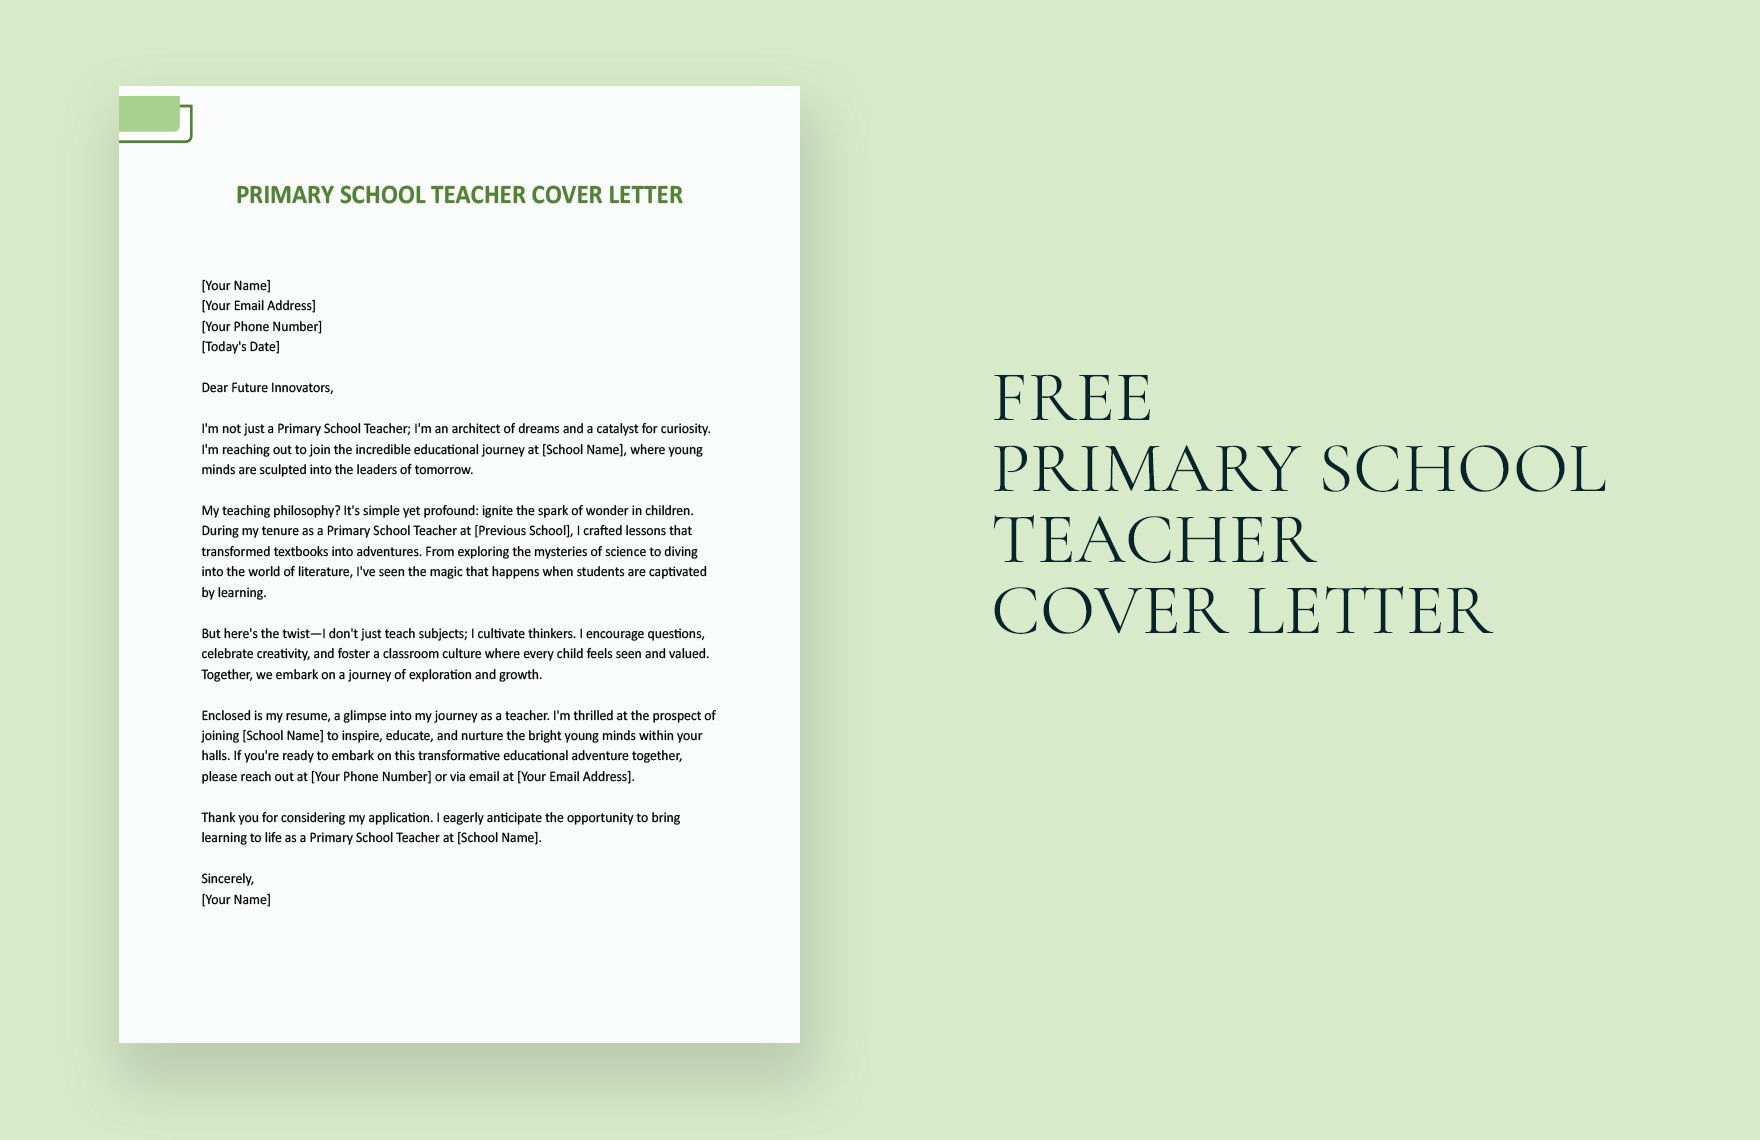 Primary School Teacher Cover Letter